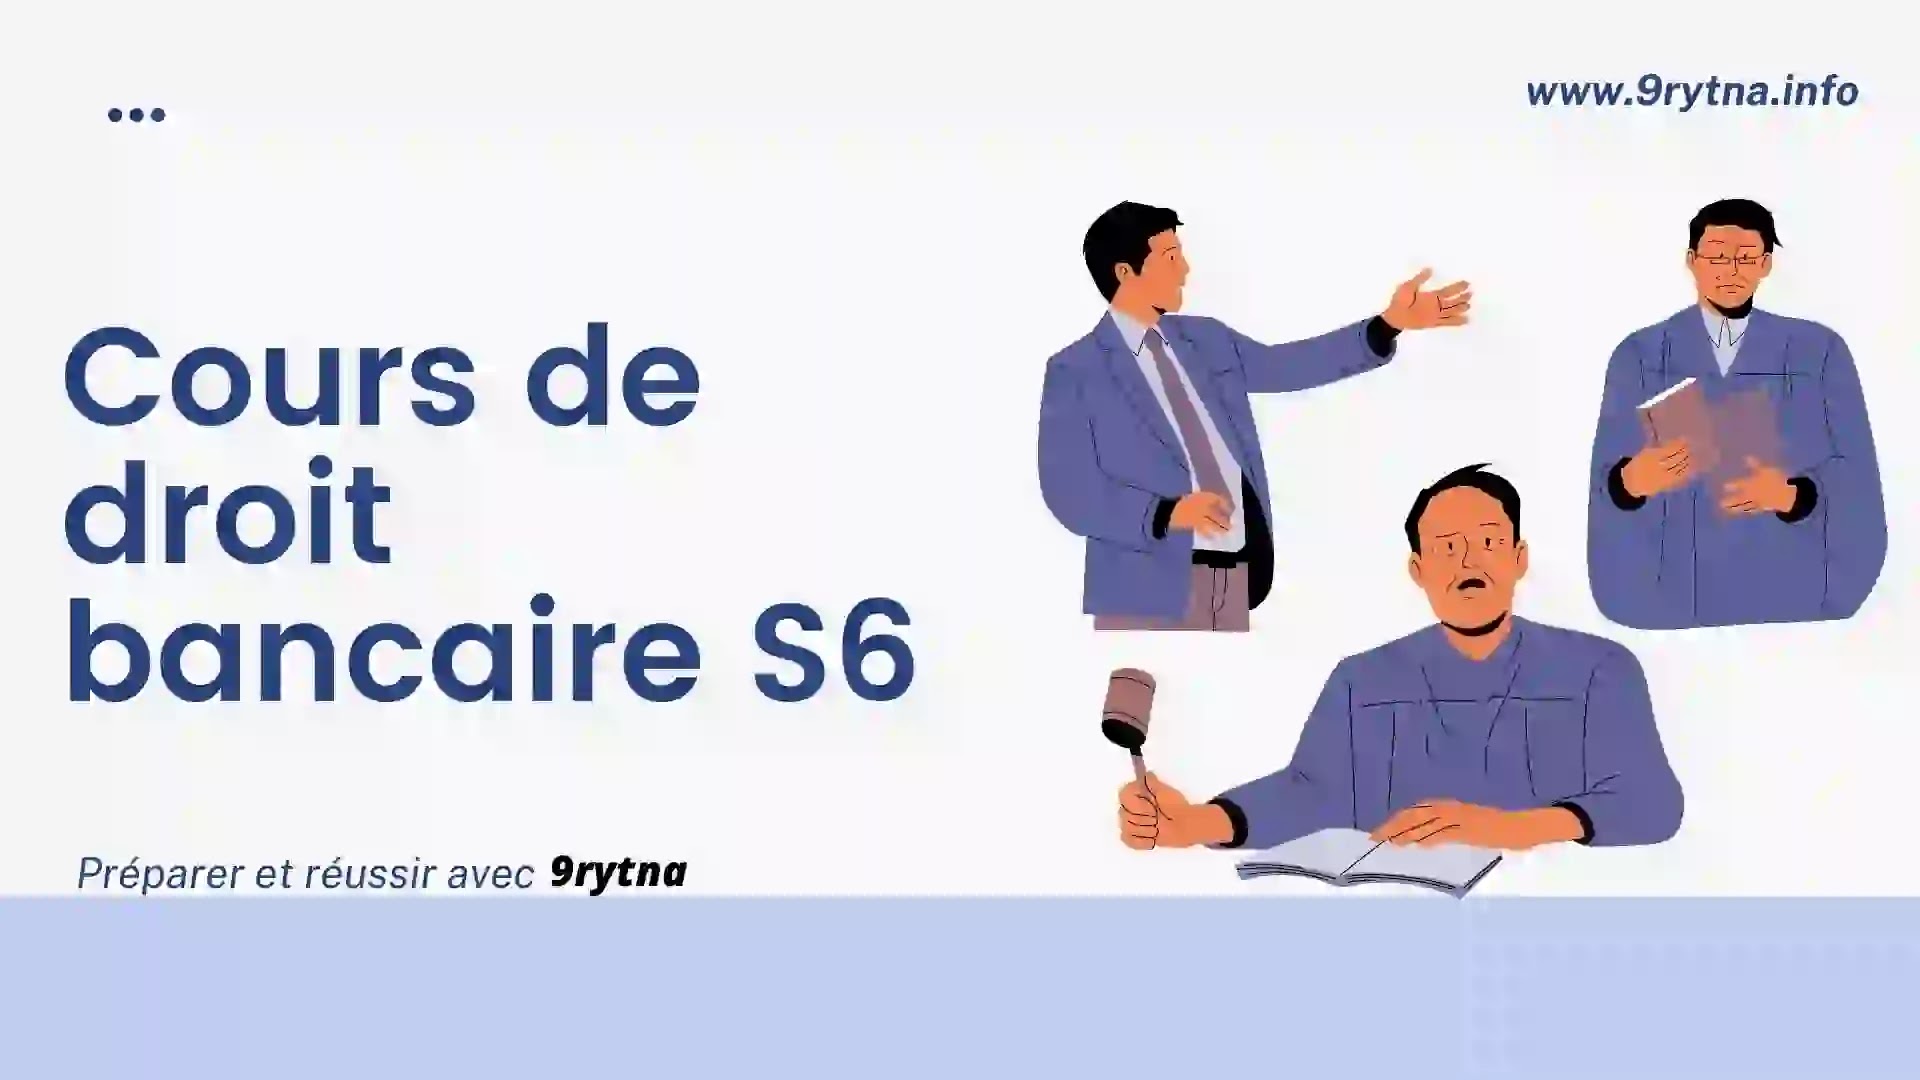 Cours de droit bancaire S6 - Droit en français